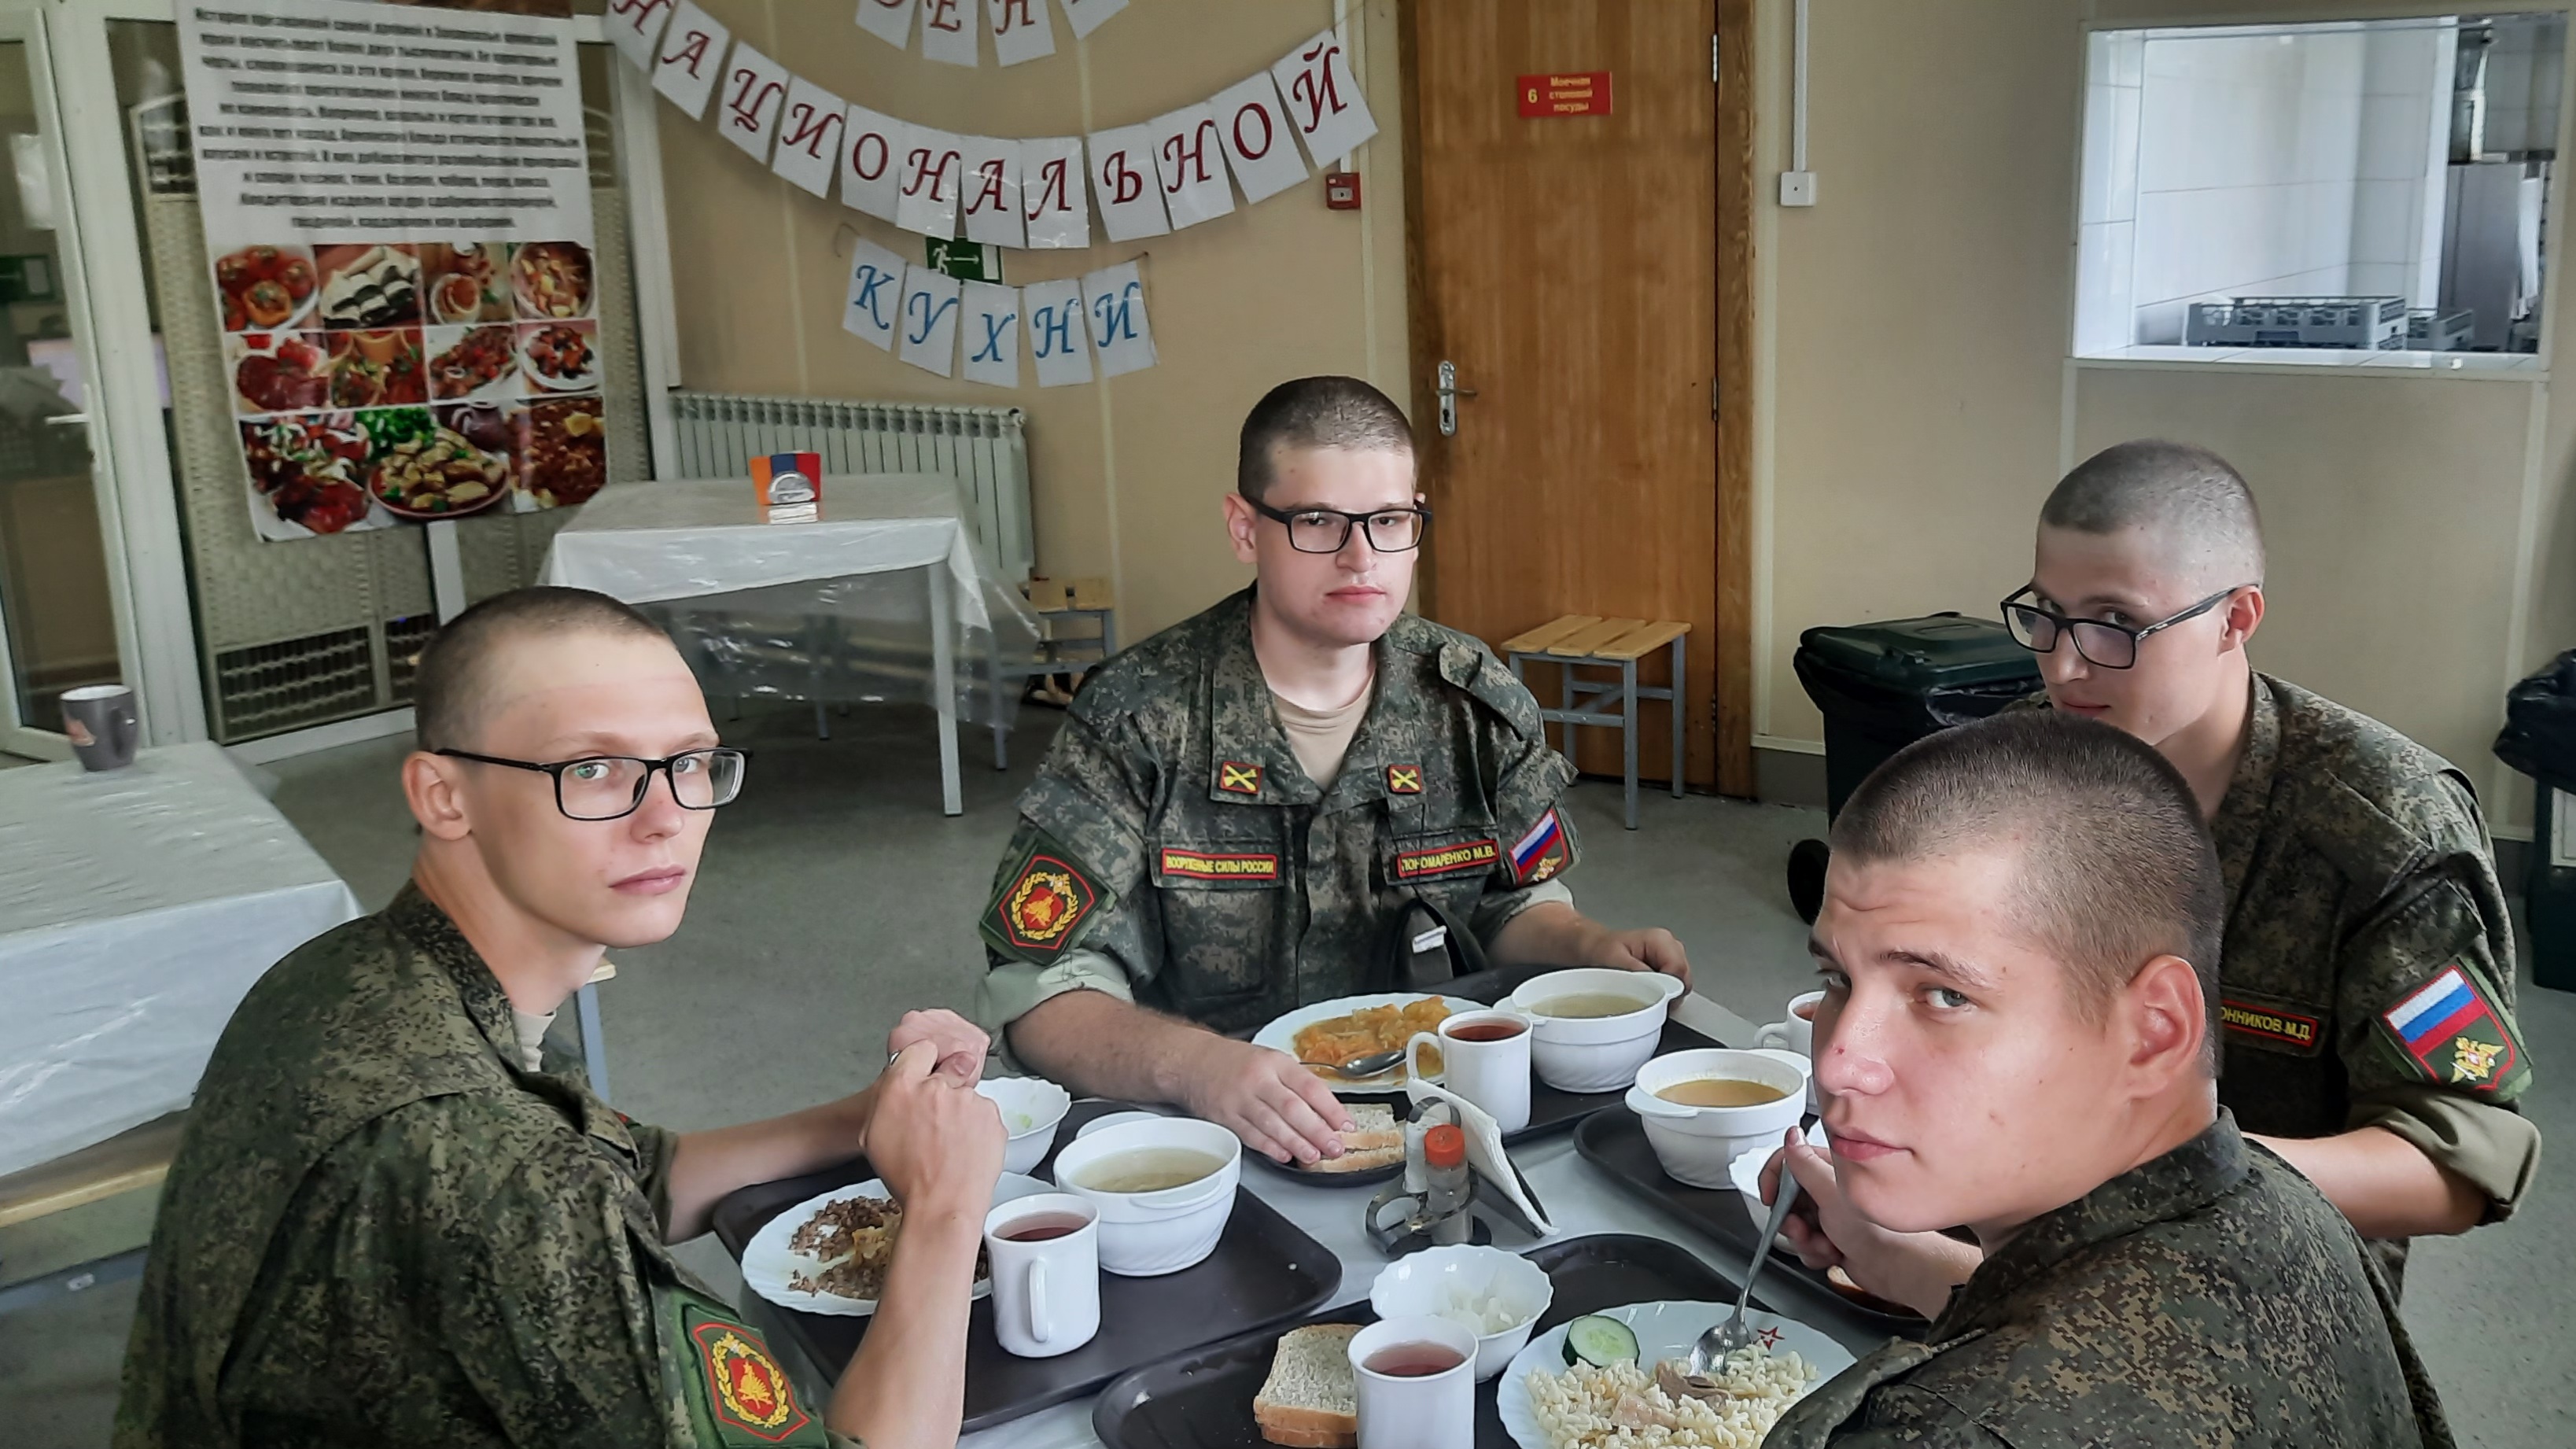 Не только картошка: Повара устроили военнослужащим белорусское застолье